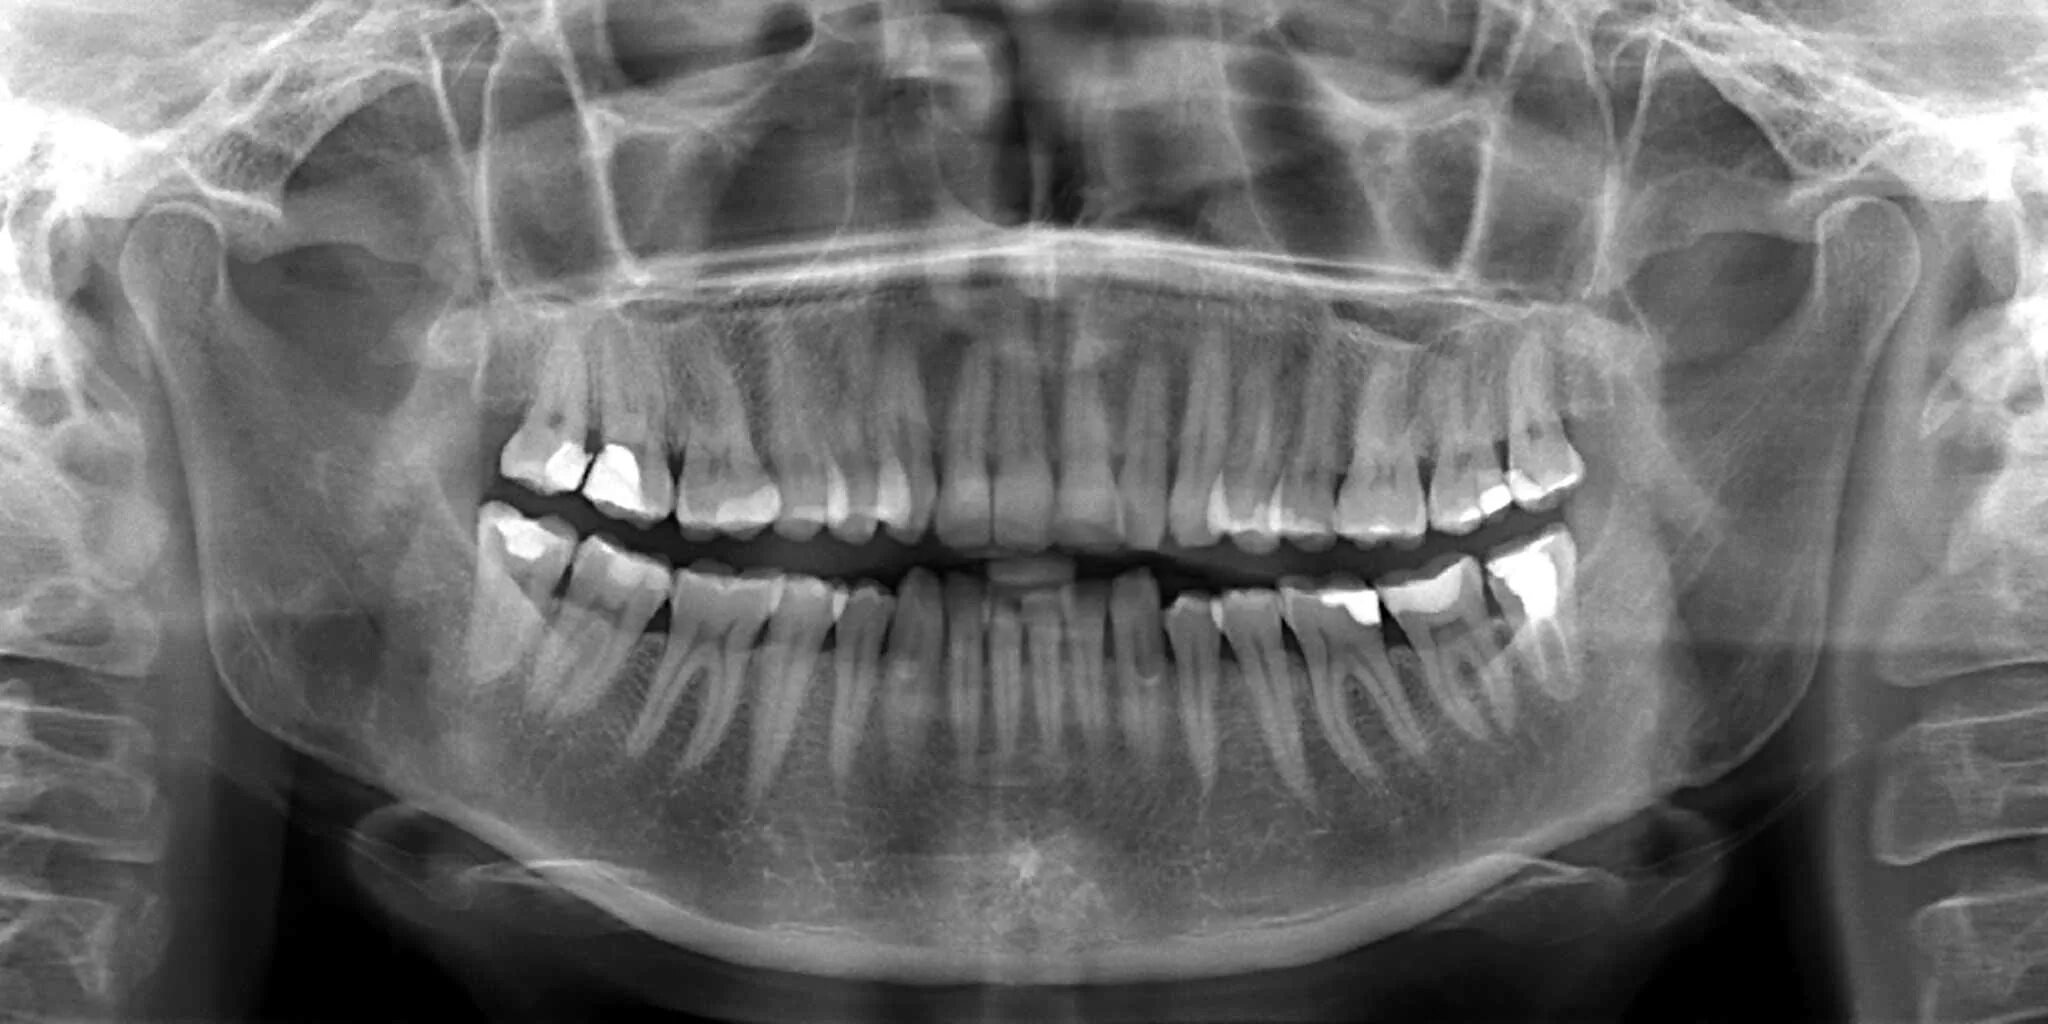 Снимок. Рентген ортопантомограмма зубов. Ортопантомограмма (обзорный снимок всей полости рта) 1100.